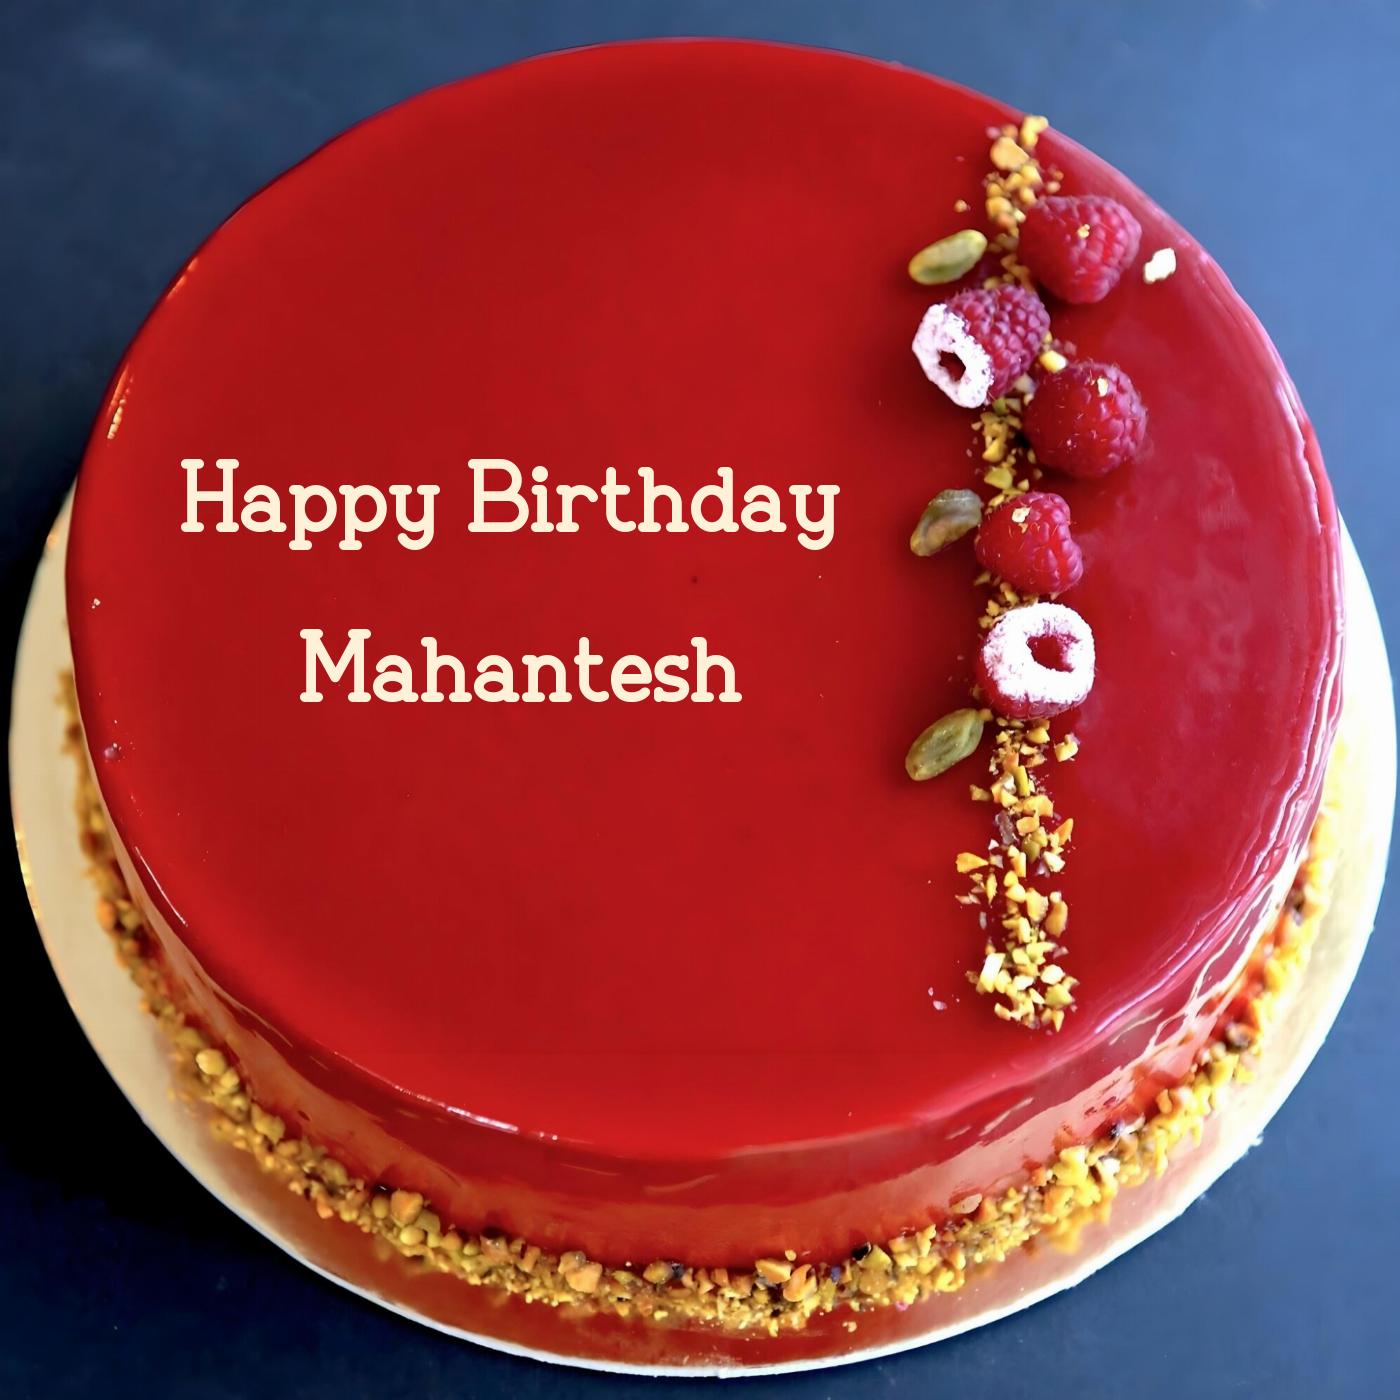 Happy Birthday Mahantesh Red Raspberry Cake